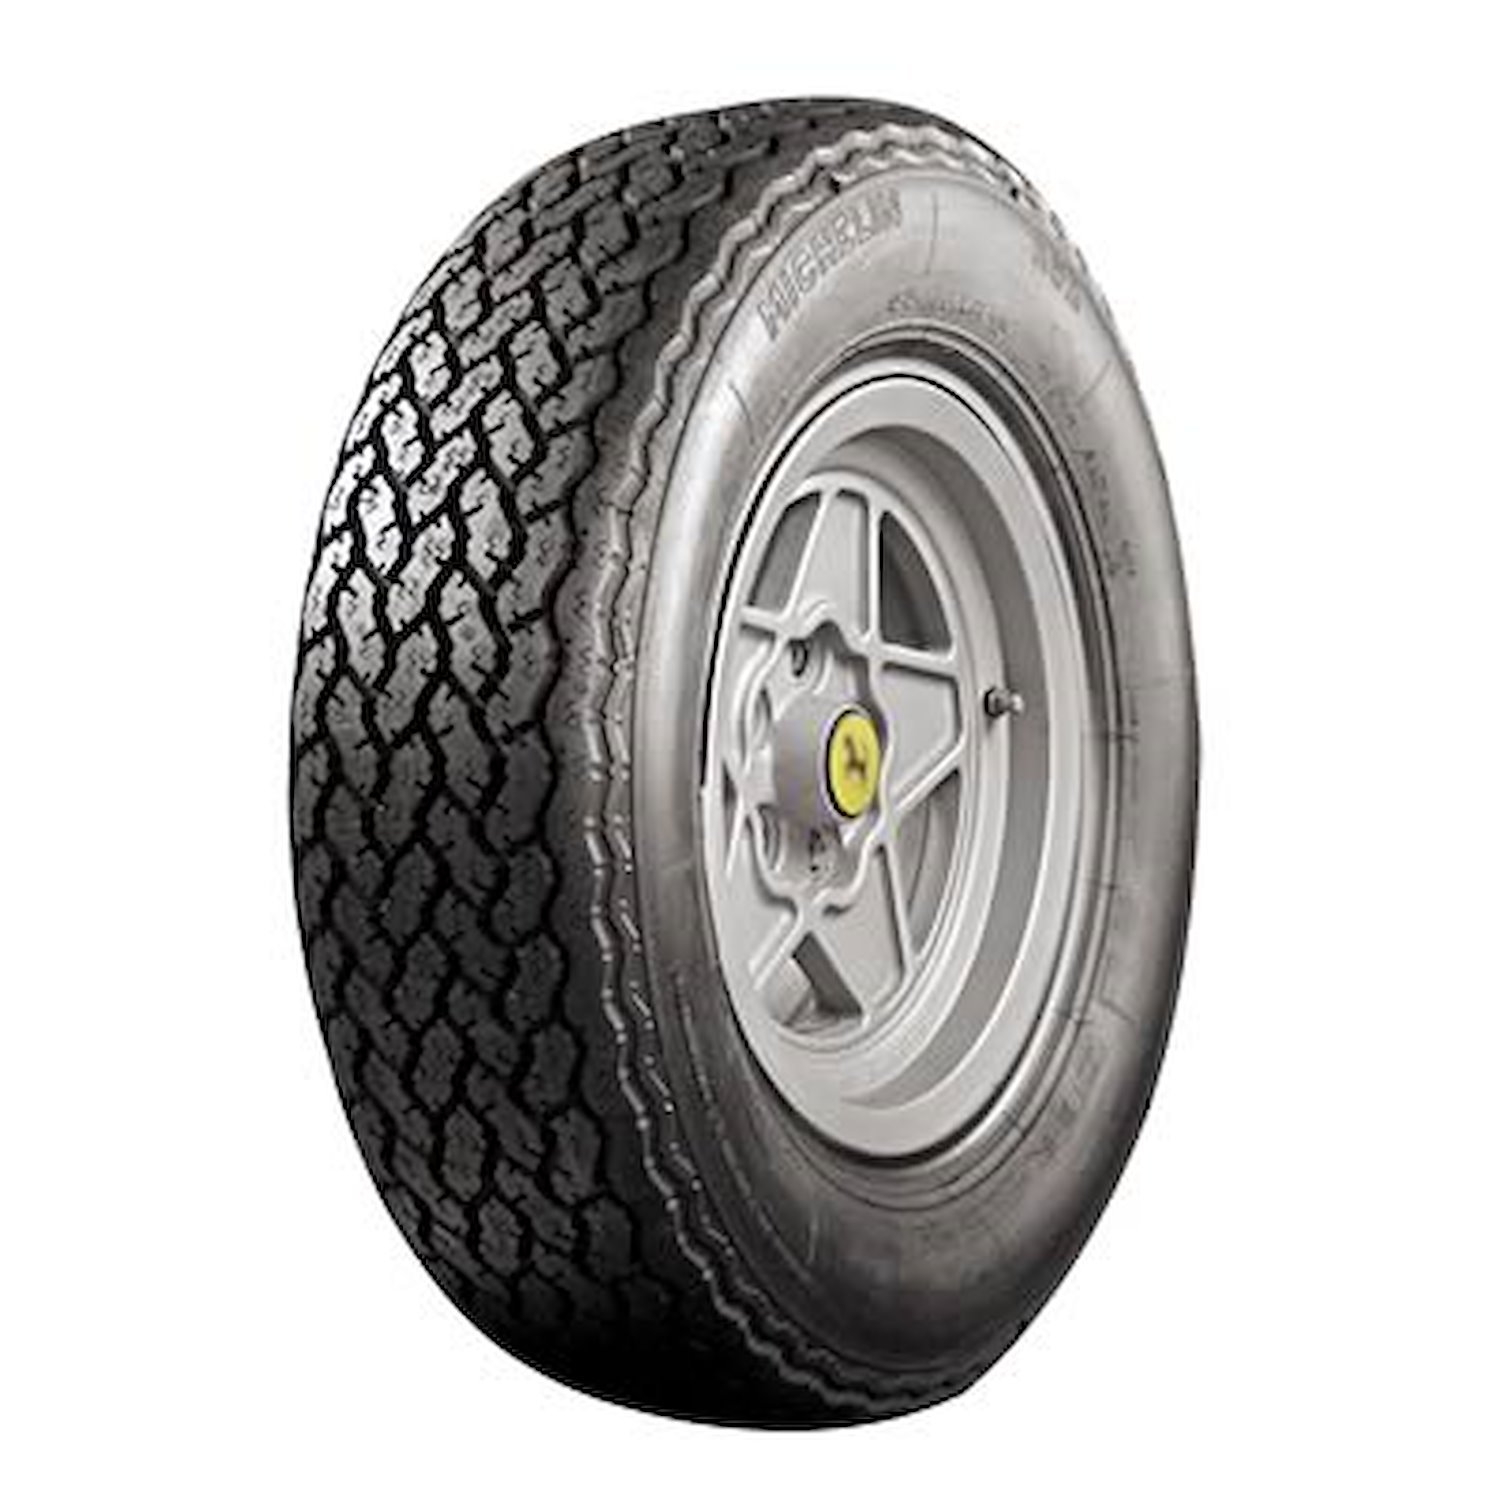 57974 Tire, Michelin XWX, 205/70VR15 90W